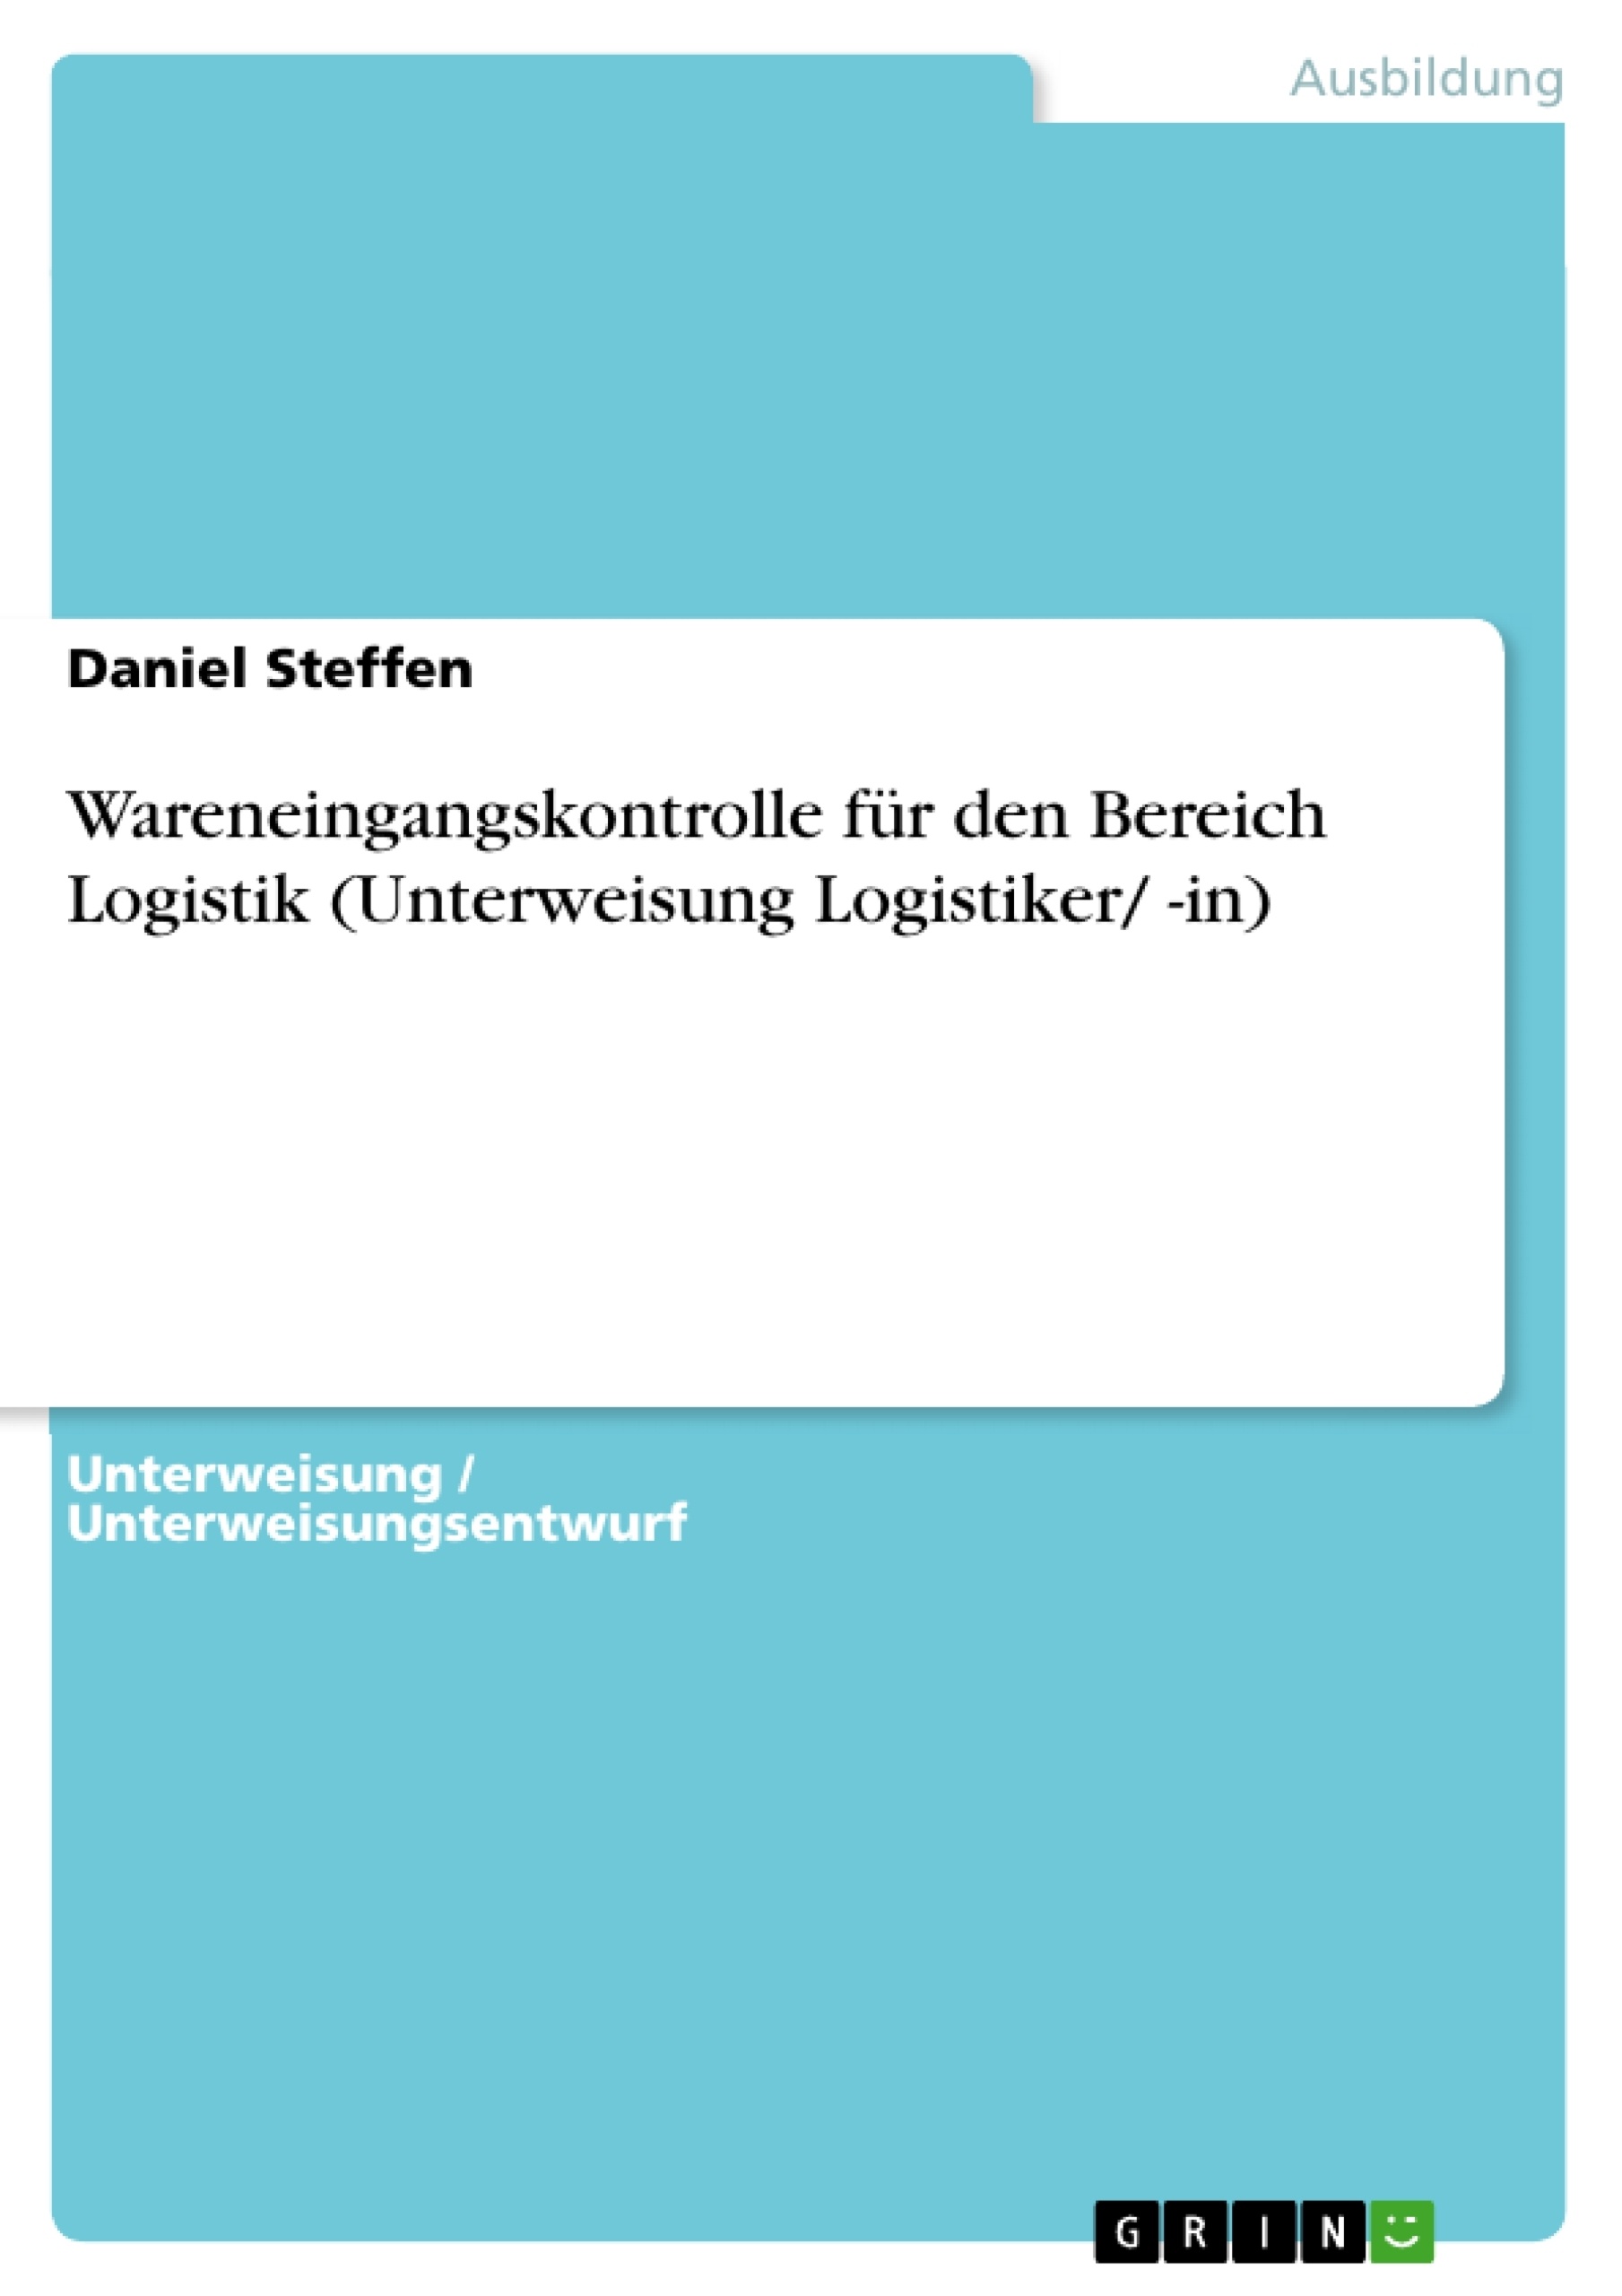 Title: Wareneingangskontrolle für den Bereich Logistik (Unterweisung Logistiker/ -in)